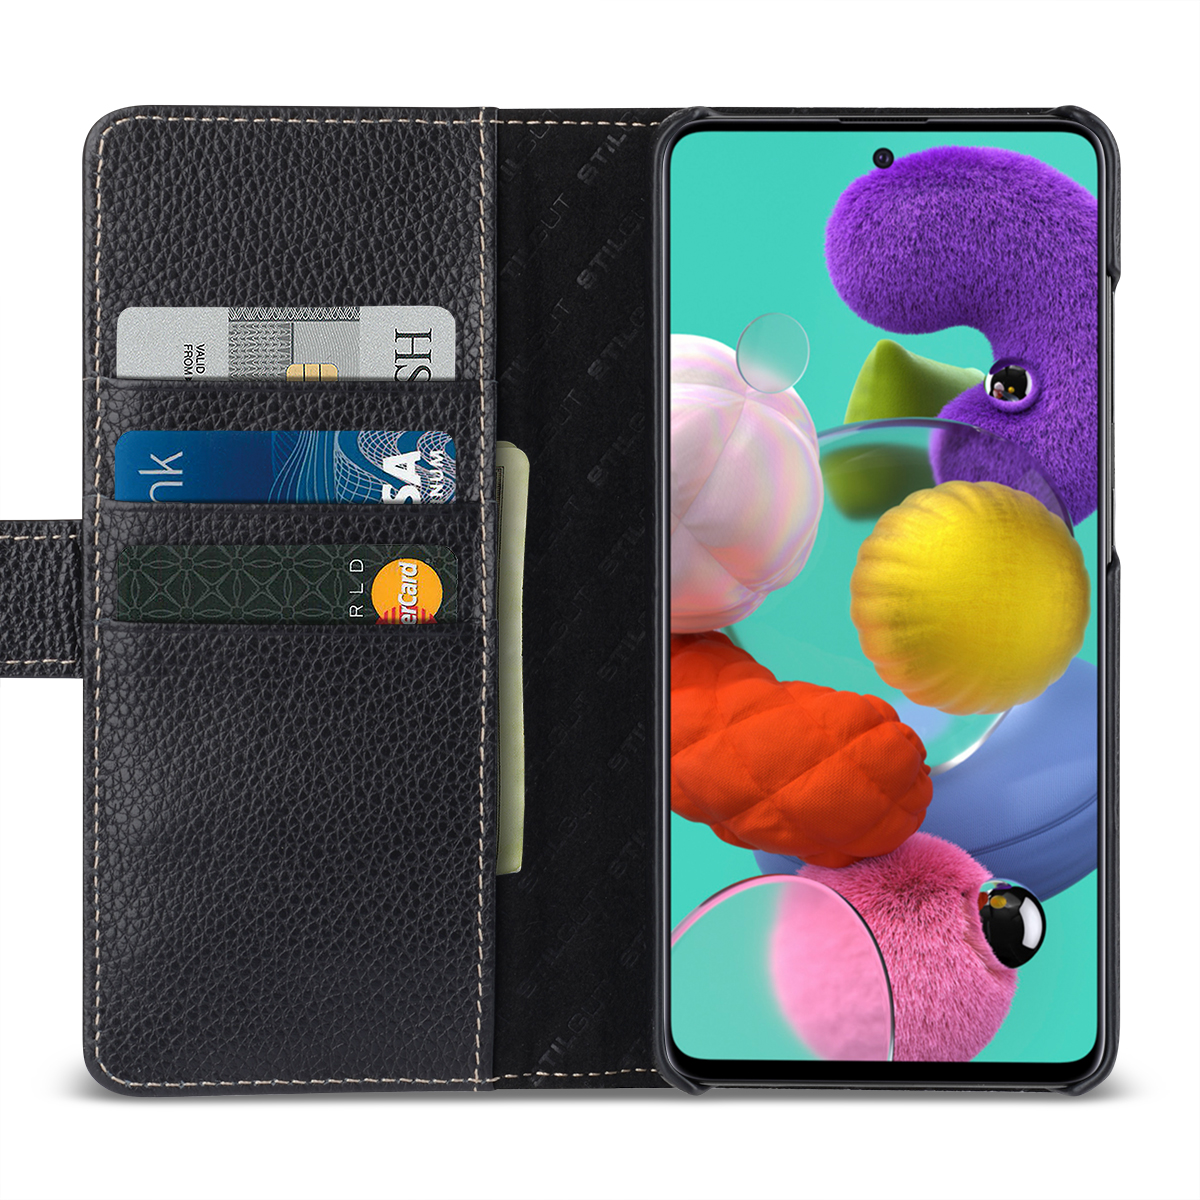 Flip Wallet Handyhülle PU Leder Tasche Case Kartensteckplätzen Schutzhülle Kompatibel mit Galaxy A51 AROYI Lederhülle Kompatibel mit Galaxy A51 Hülle und Schutzfolie Blau 